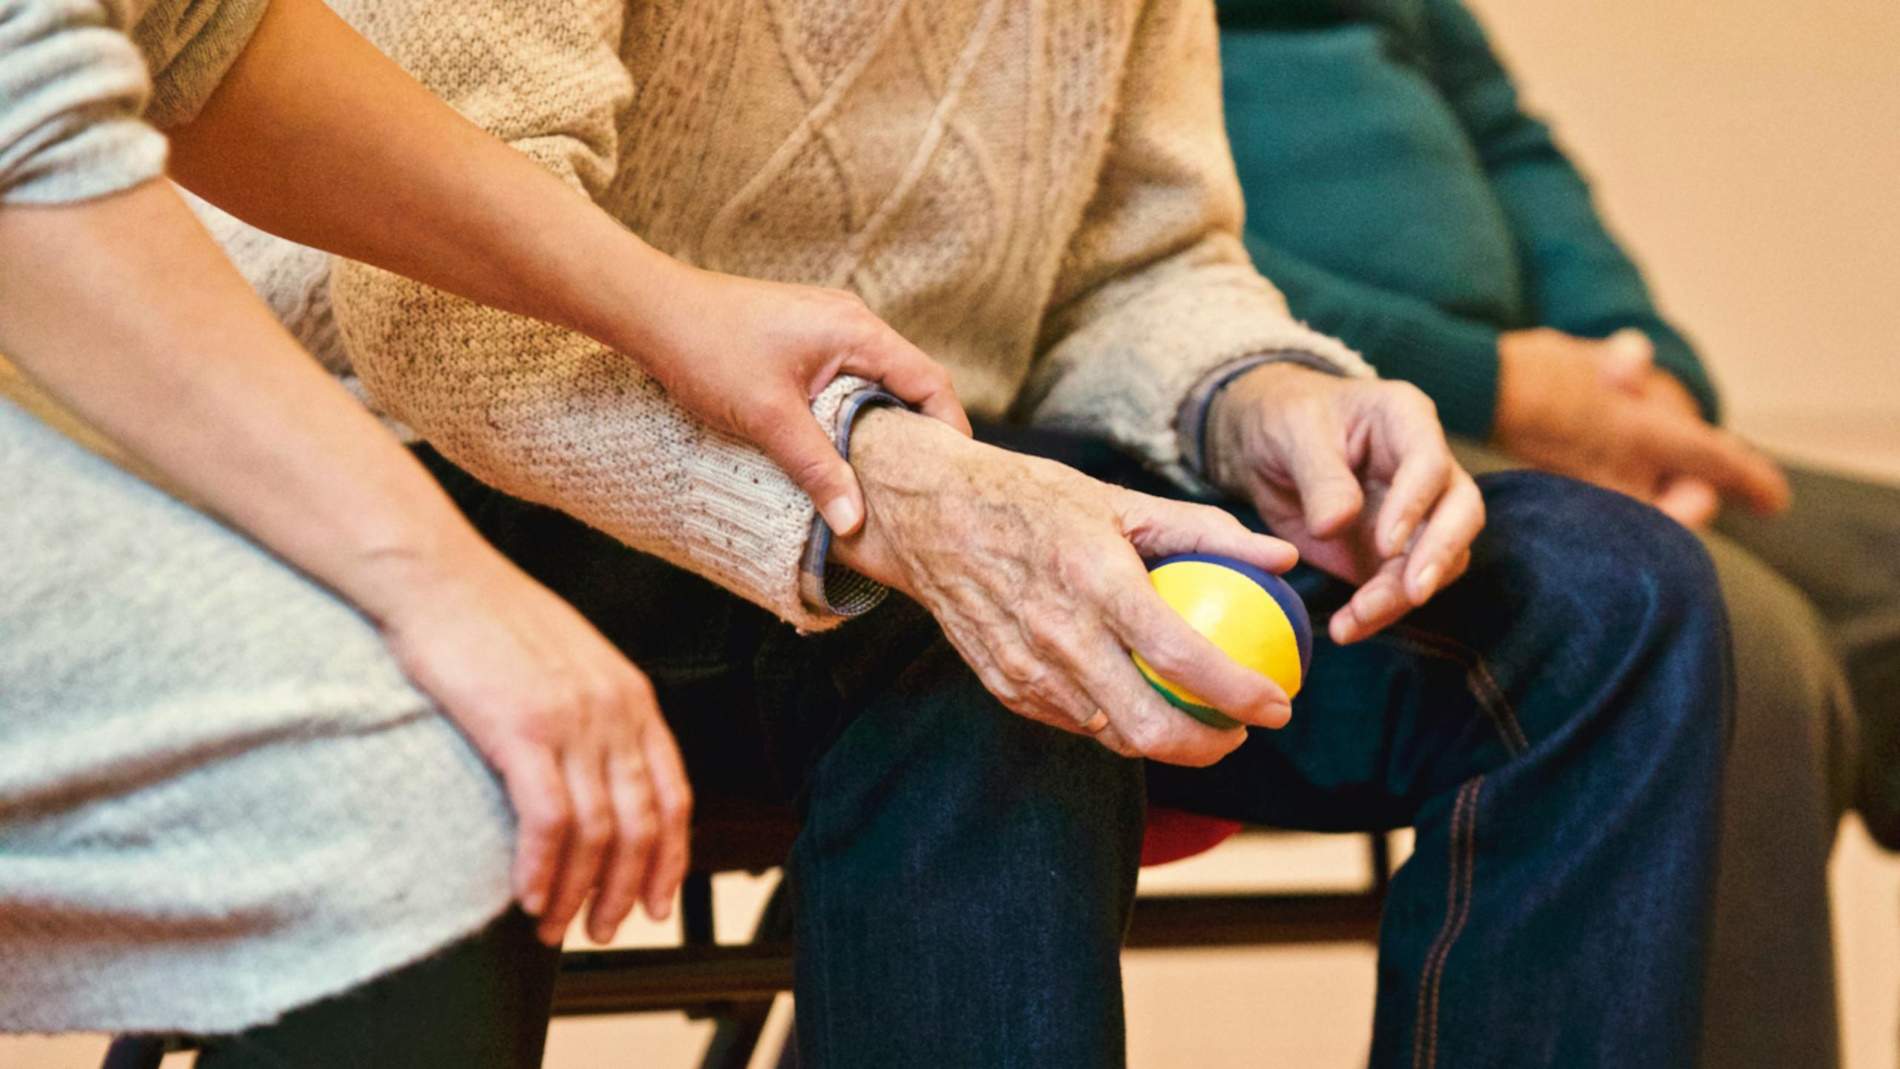 "Cuidar-se per cuidar": més de 6.500 persones cuidadores es formen en innovadors tallers